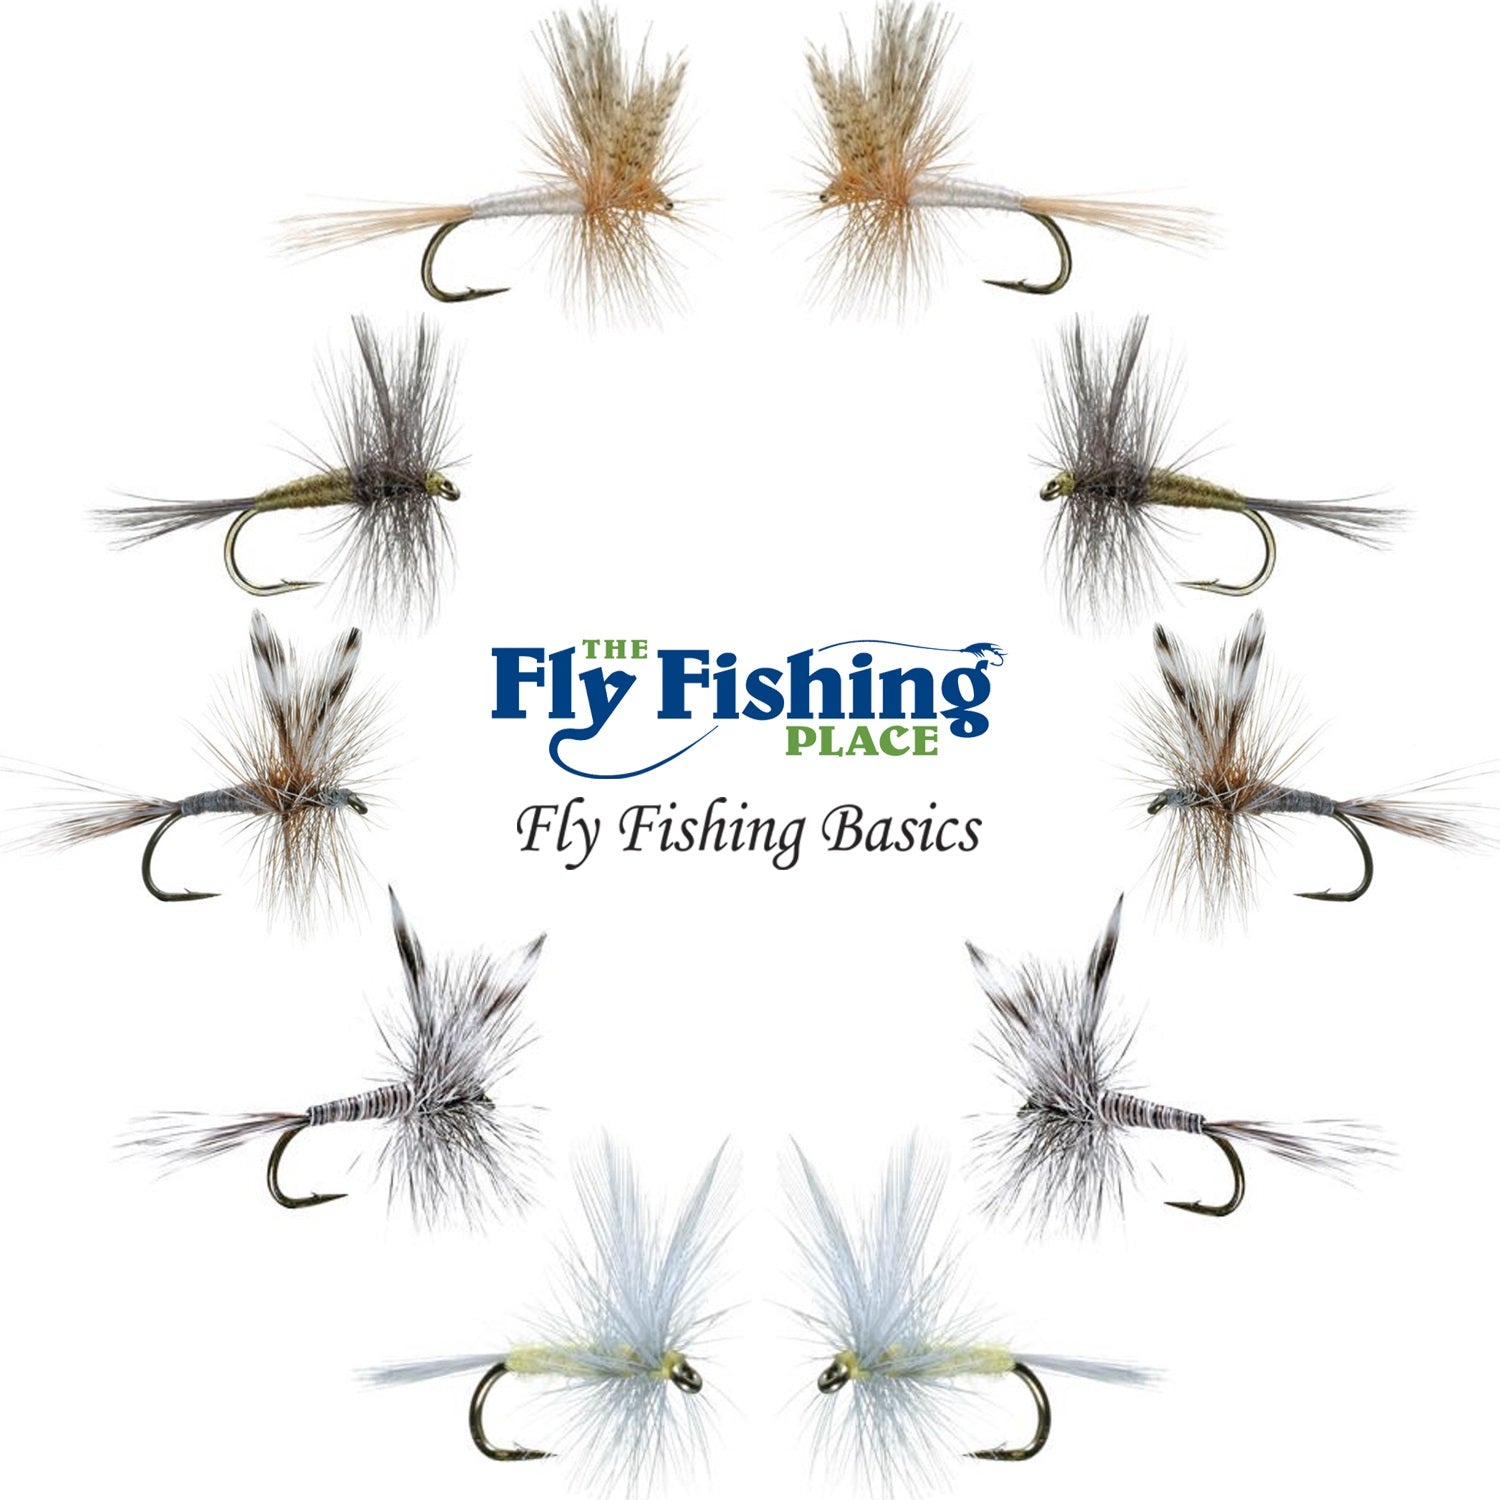 The Fly Fishing Place Basics Collection - Surtido clásico de moscas secas - 10 moscas de pesca secas - 5 patrones - Tamaños de anzuelo 12, 14, 16 